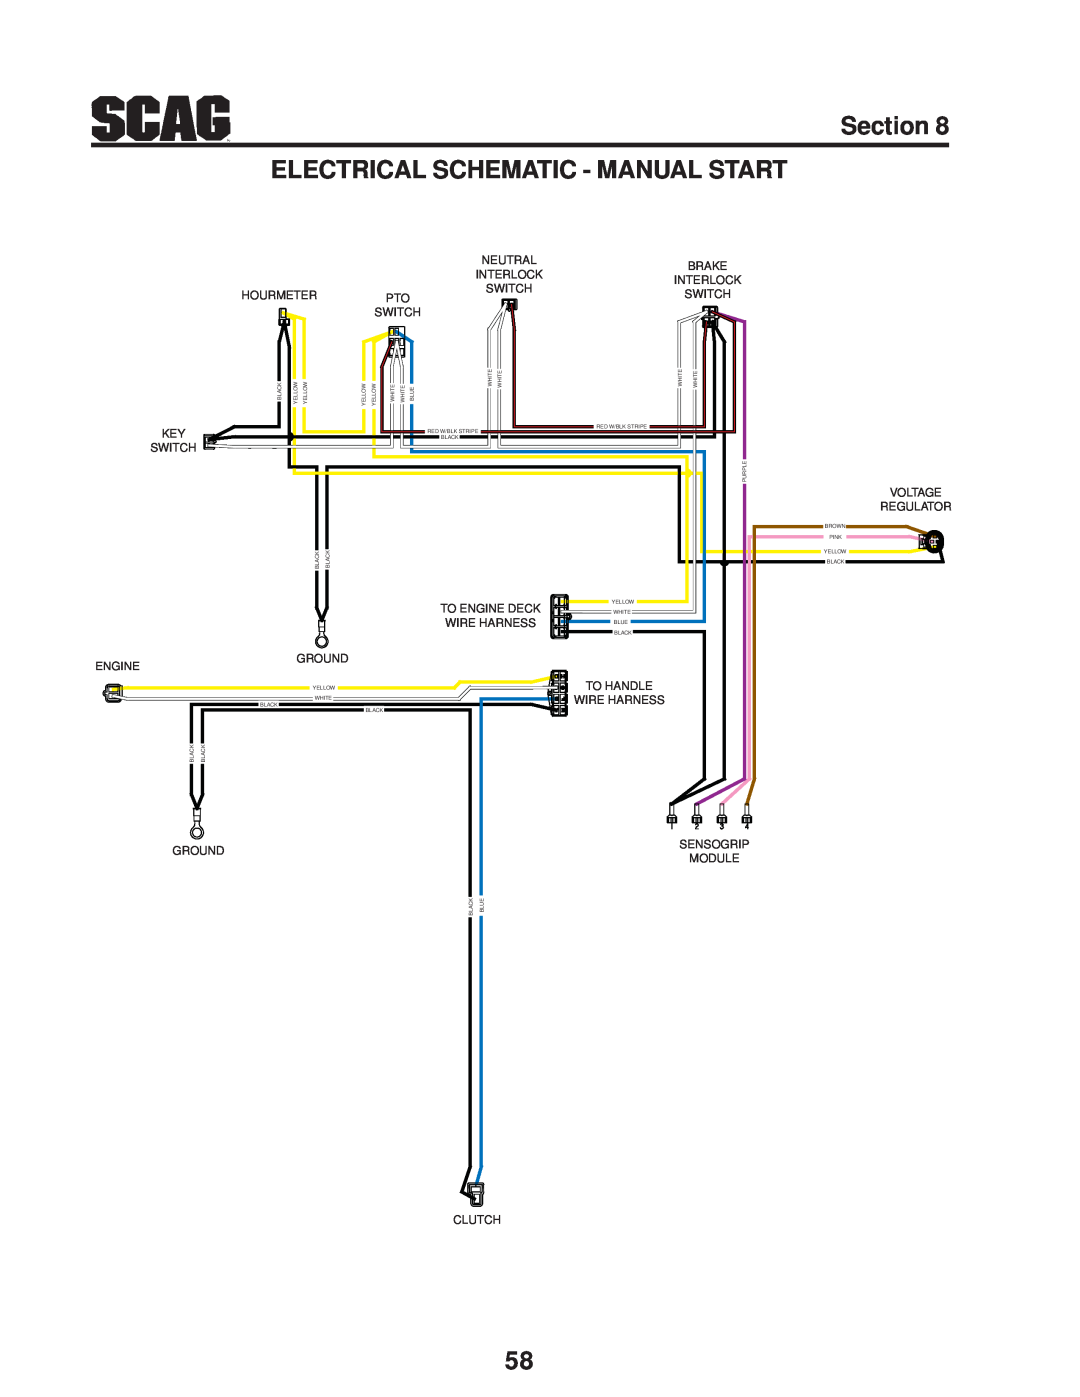 Scag Power Equipment SWZV manual Engine, Ground, Clutch, Voltage Regulator 